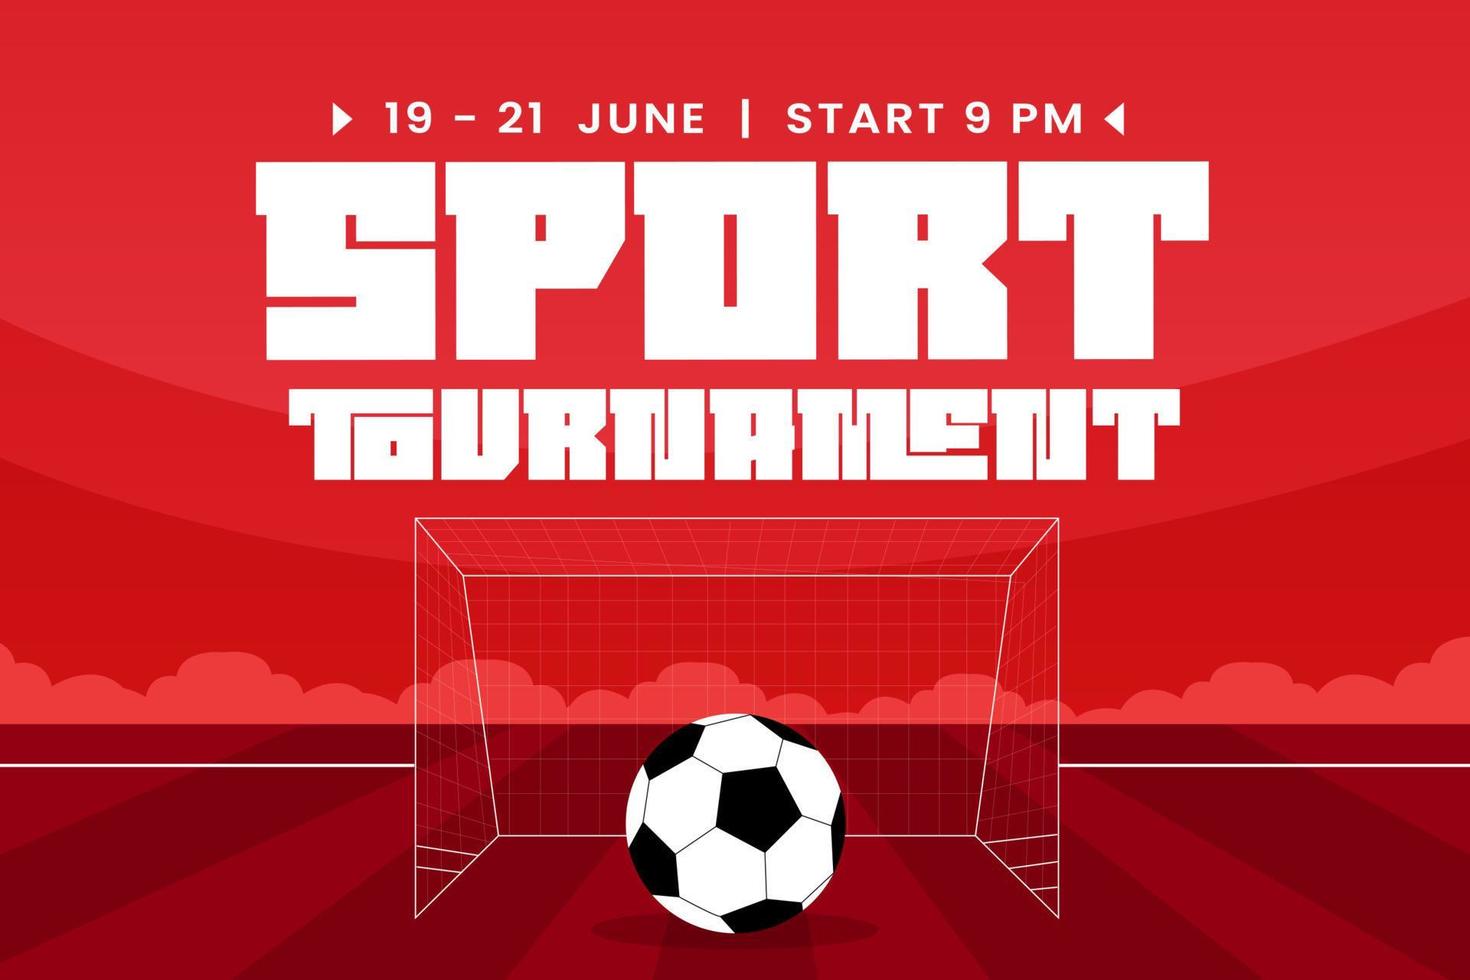 torneio de futebol, modelo de design de fundo de evento esportivo fácil de personalizar design simples e elegante vetor